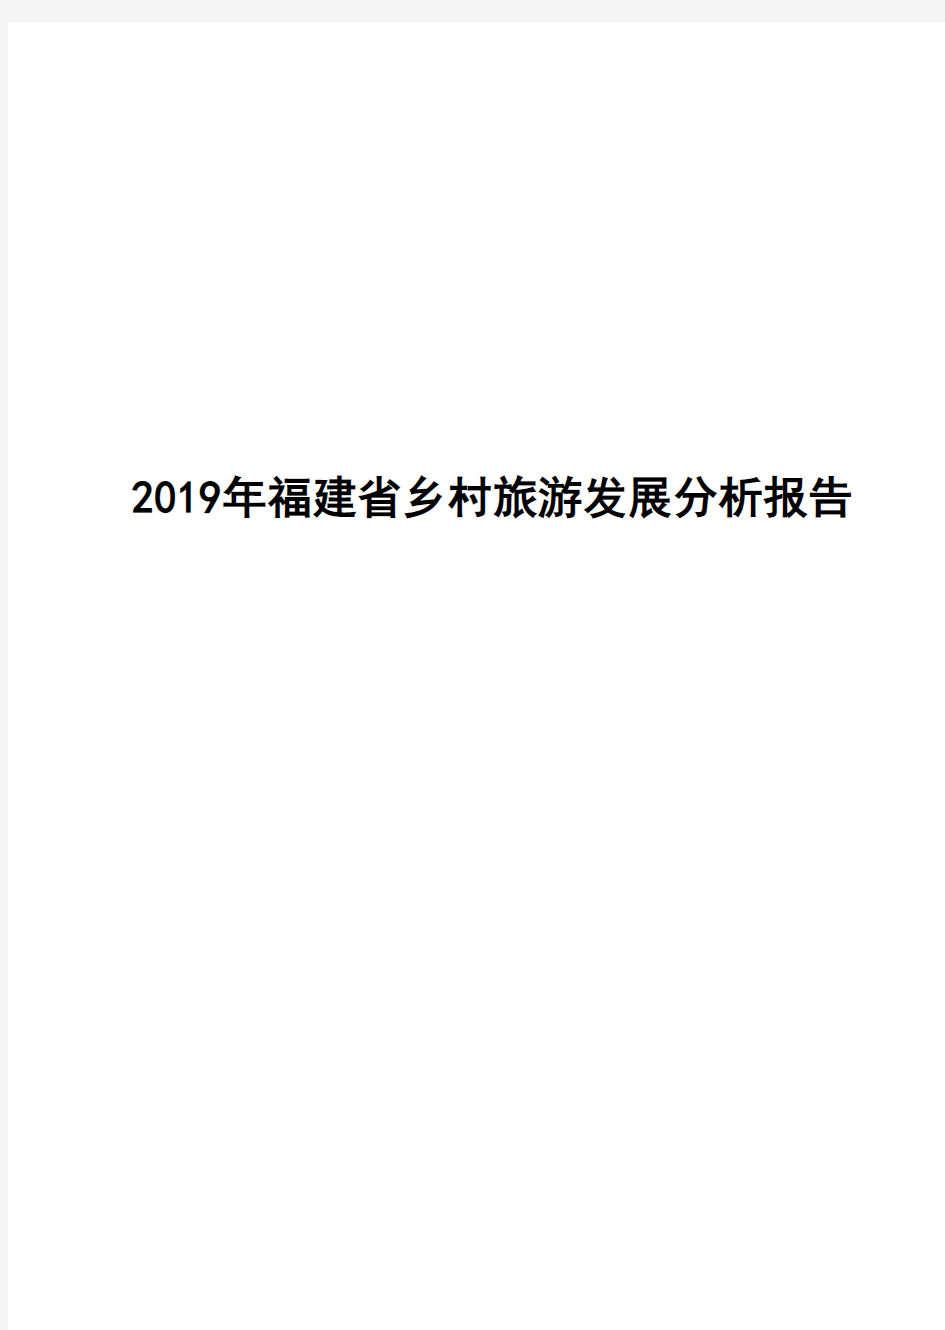 2019年福建省乡村旅游发展分析报告